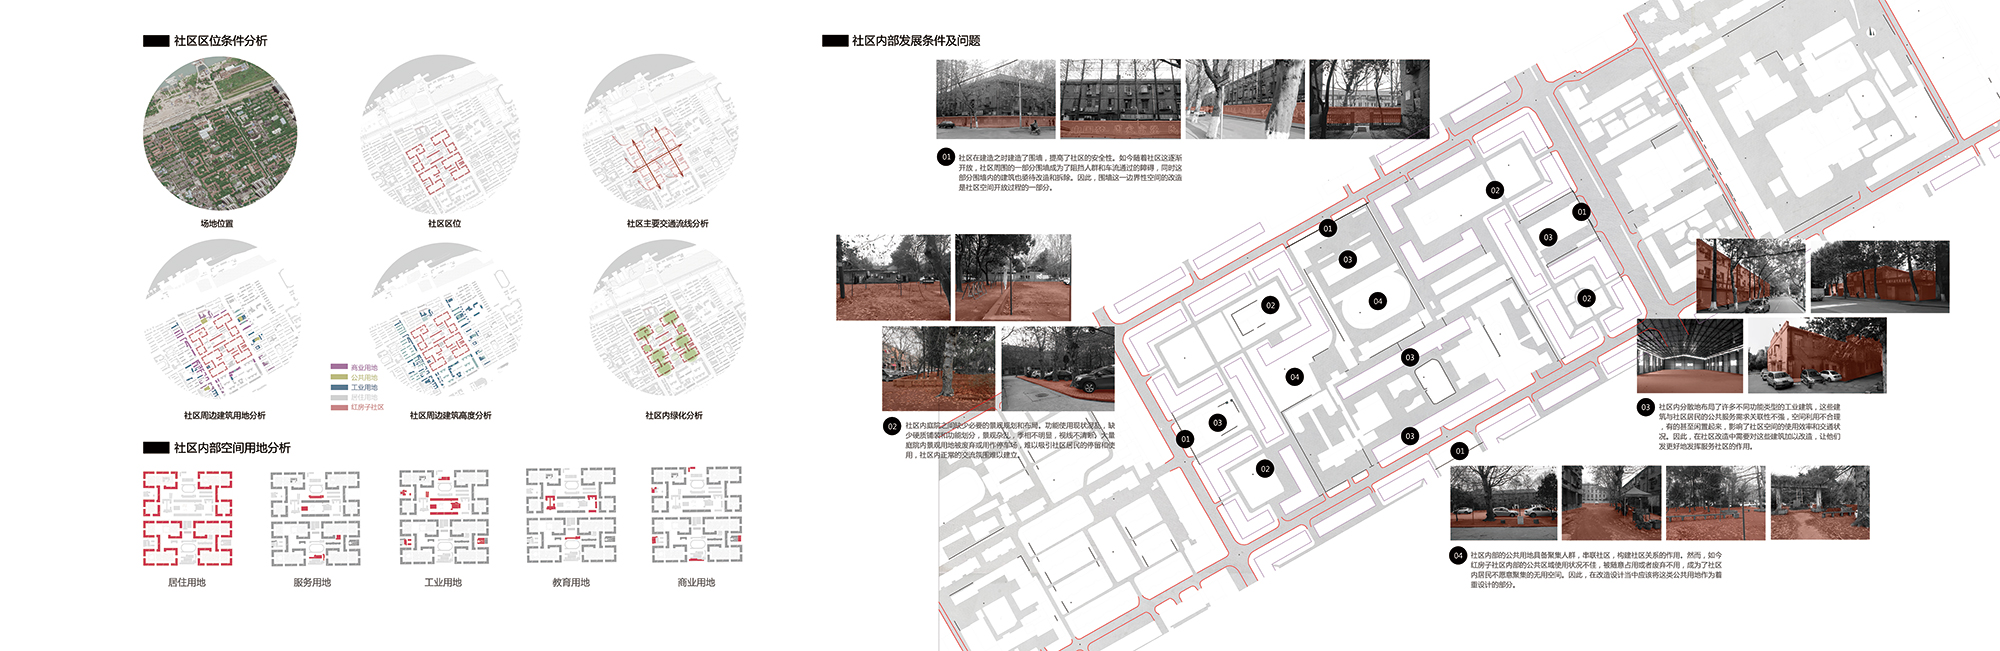 集体式社区环境更新设计—以武汉红房子社区改造为例 场地现状